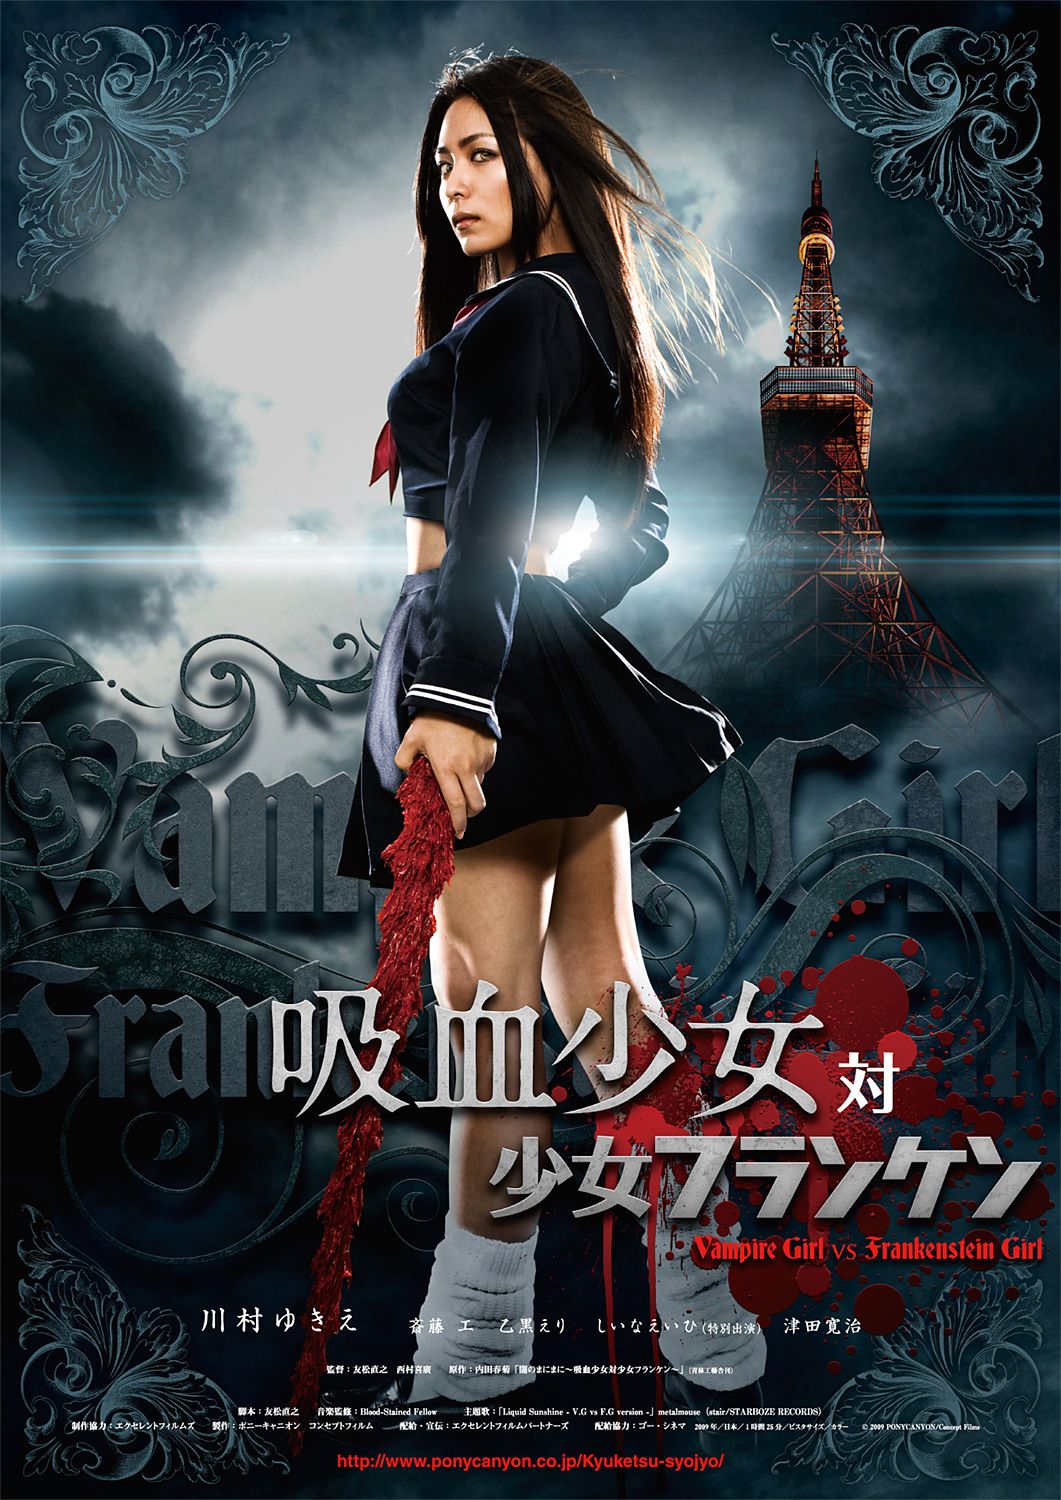 Extra Large Movie Poster Image for Vampire Girl vs. Frankenstein Girl (#1 of 3)